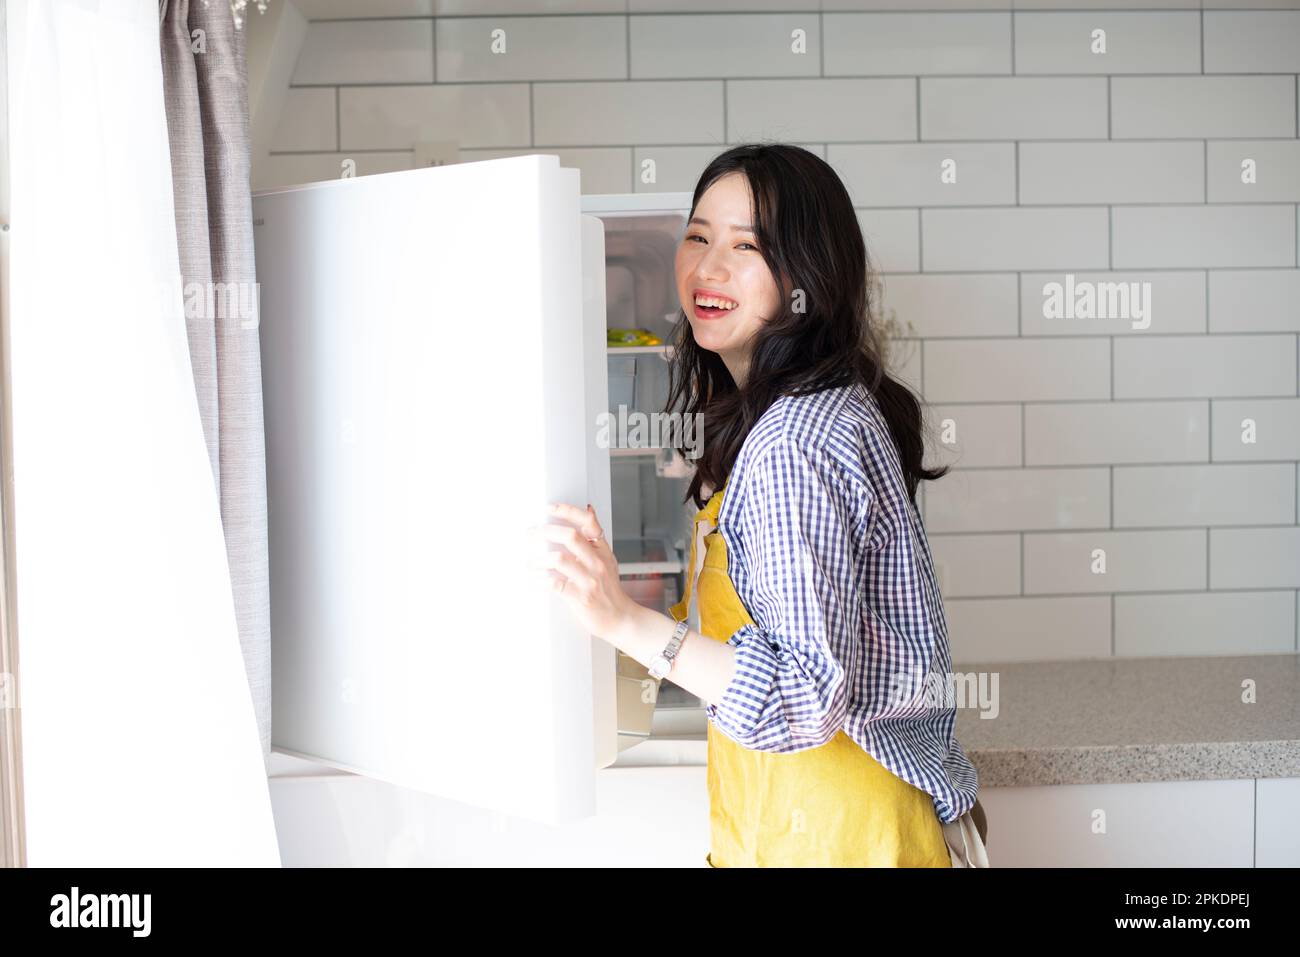 Frau mit Schürze in der Küche, die den Kühlschrank öffnet Stockfoto